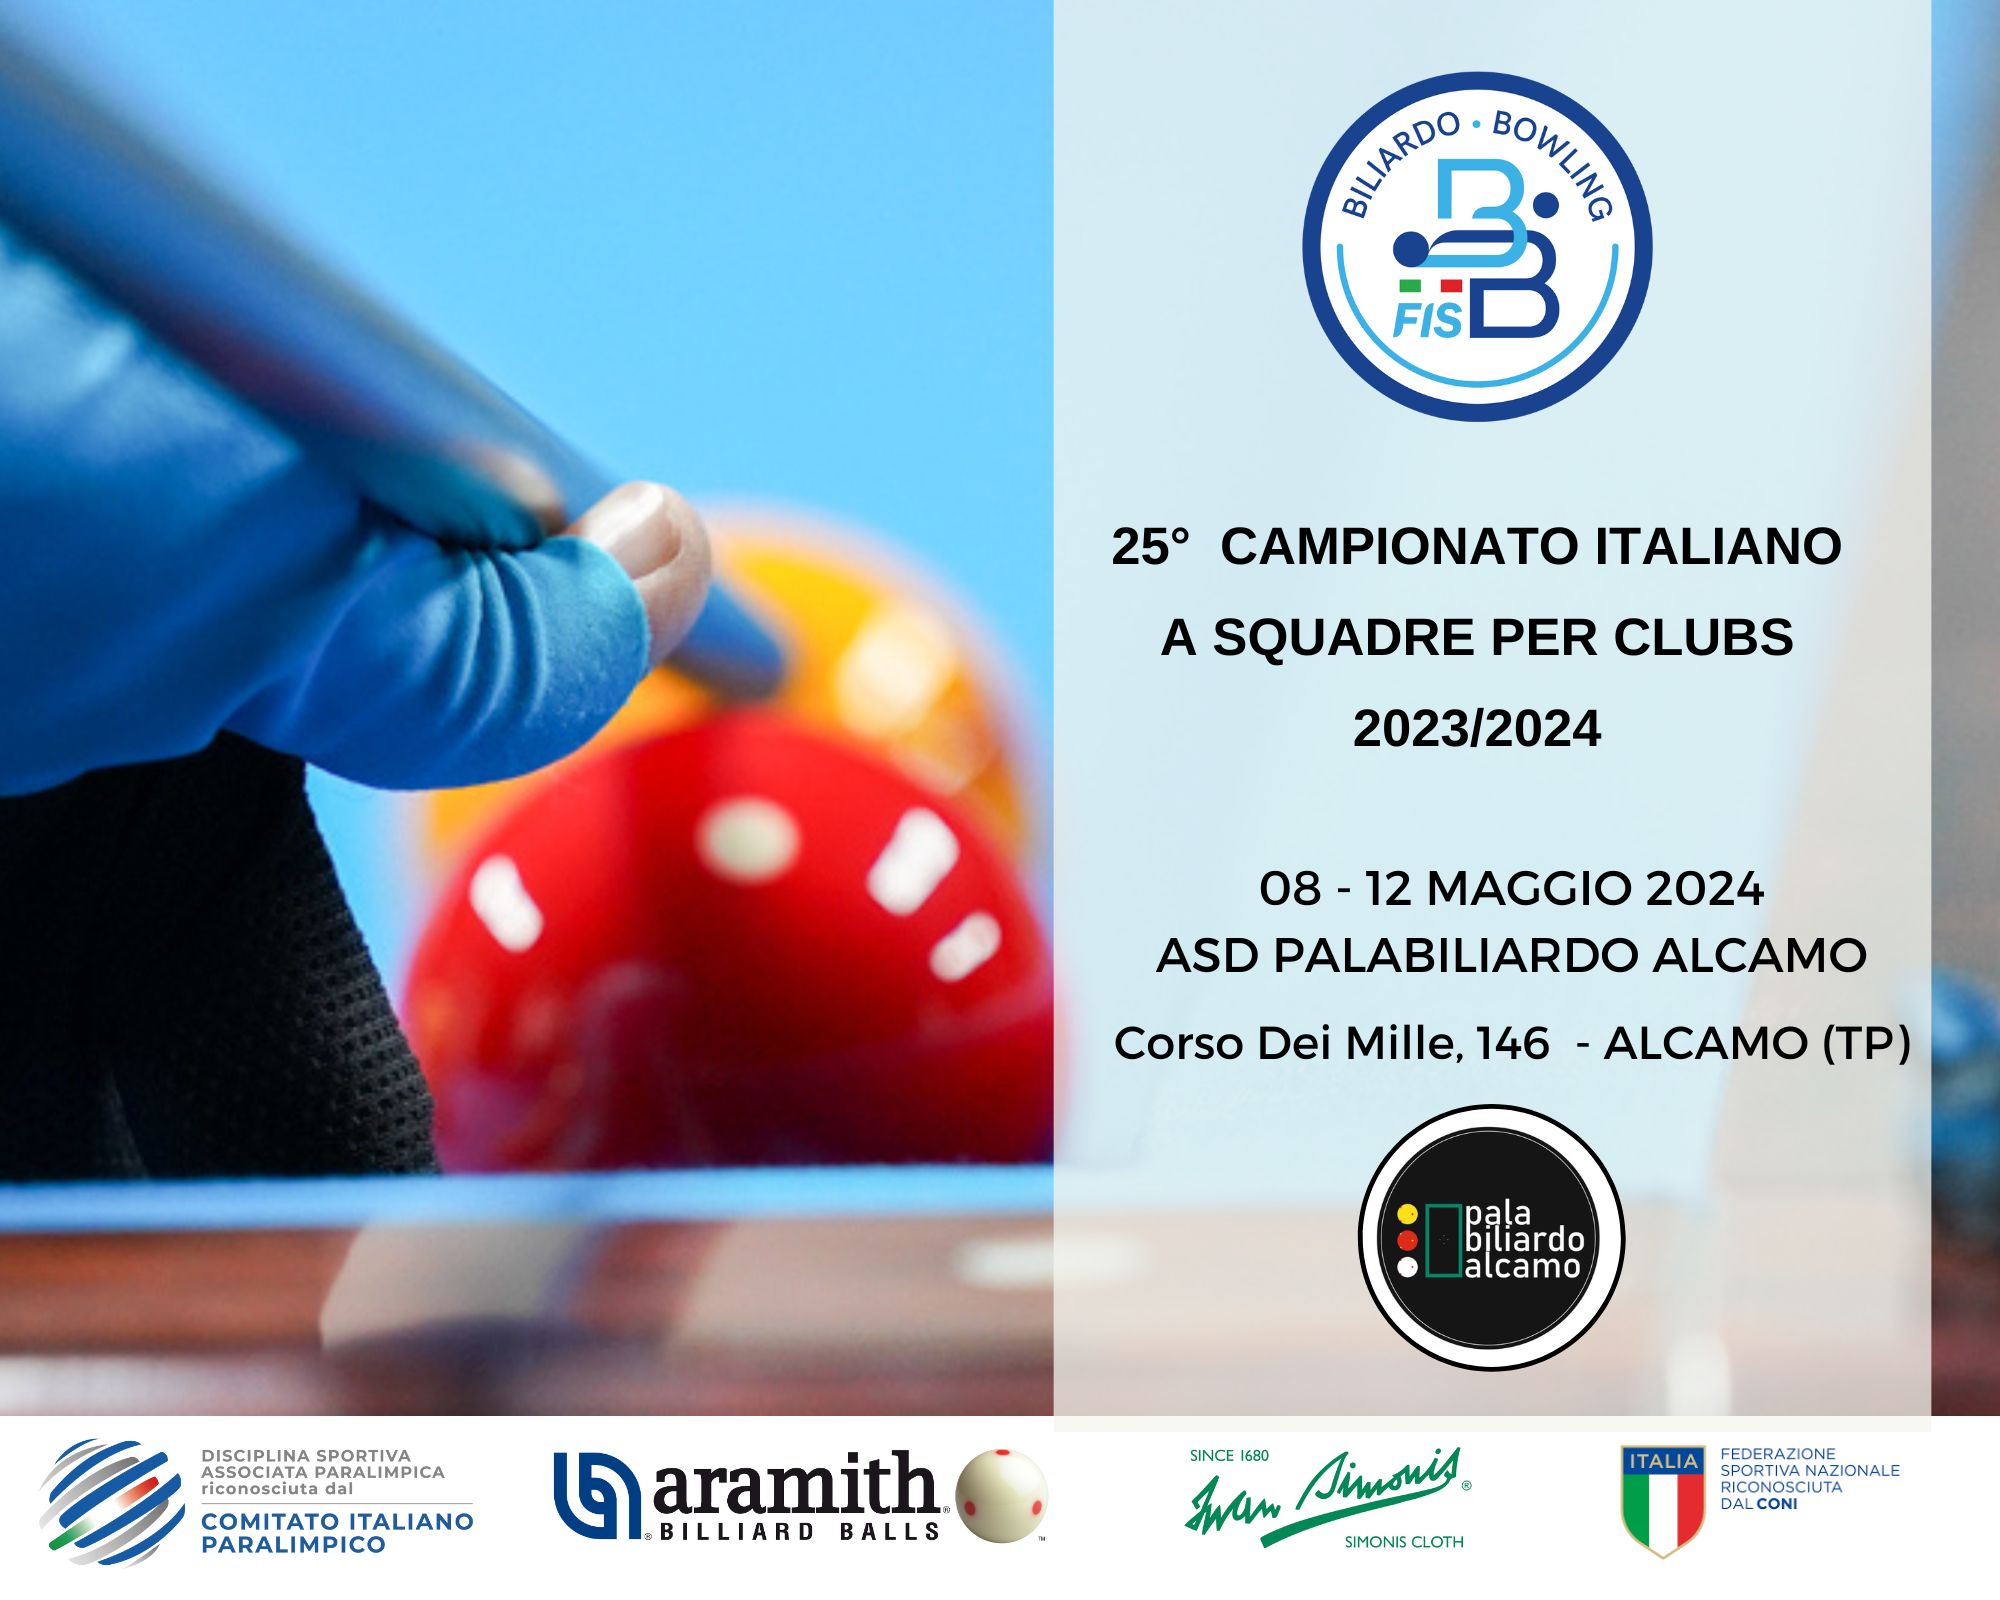 25º CAMPIONATO ITALIANO A SQUADRE PER CLUBS 2023-2024: TIME TABLE